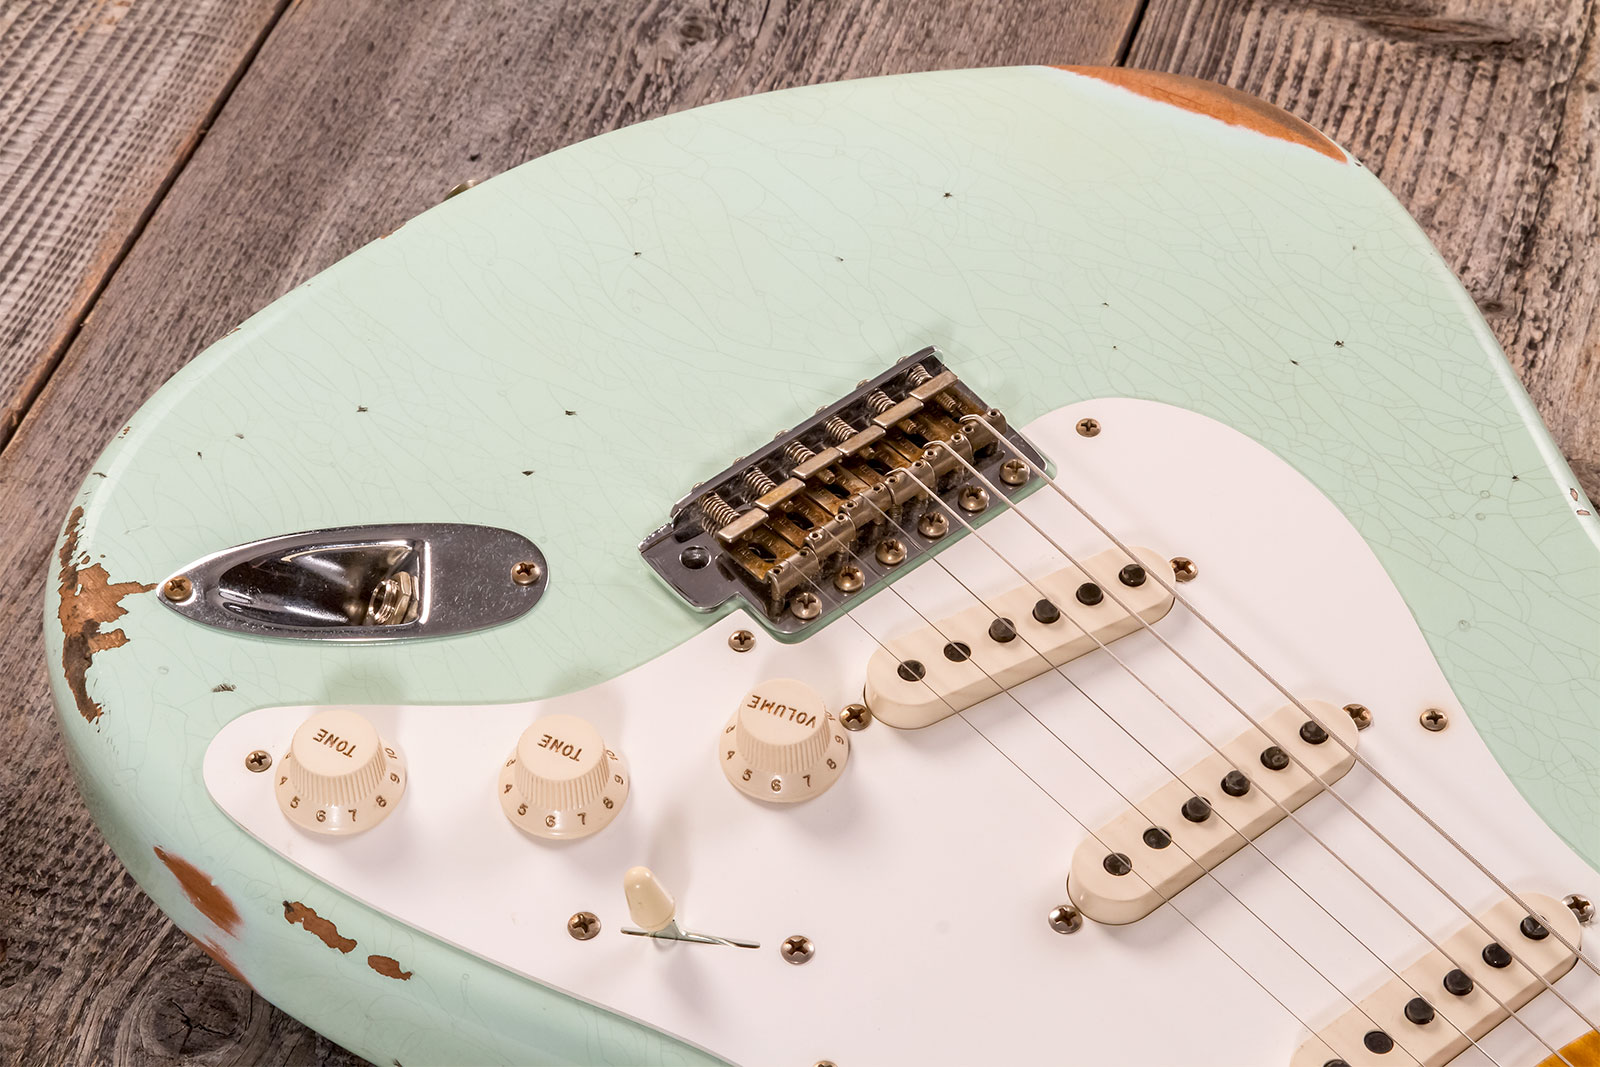 Fender Custom Shop Strat 1958 3s Trem Mn #cz572338 - Relic Aged Surf Green - Str shape electric guitar - Variation 3